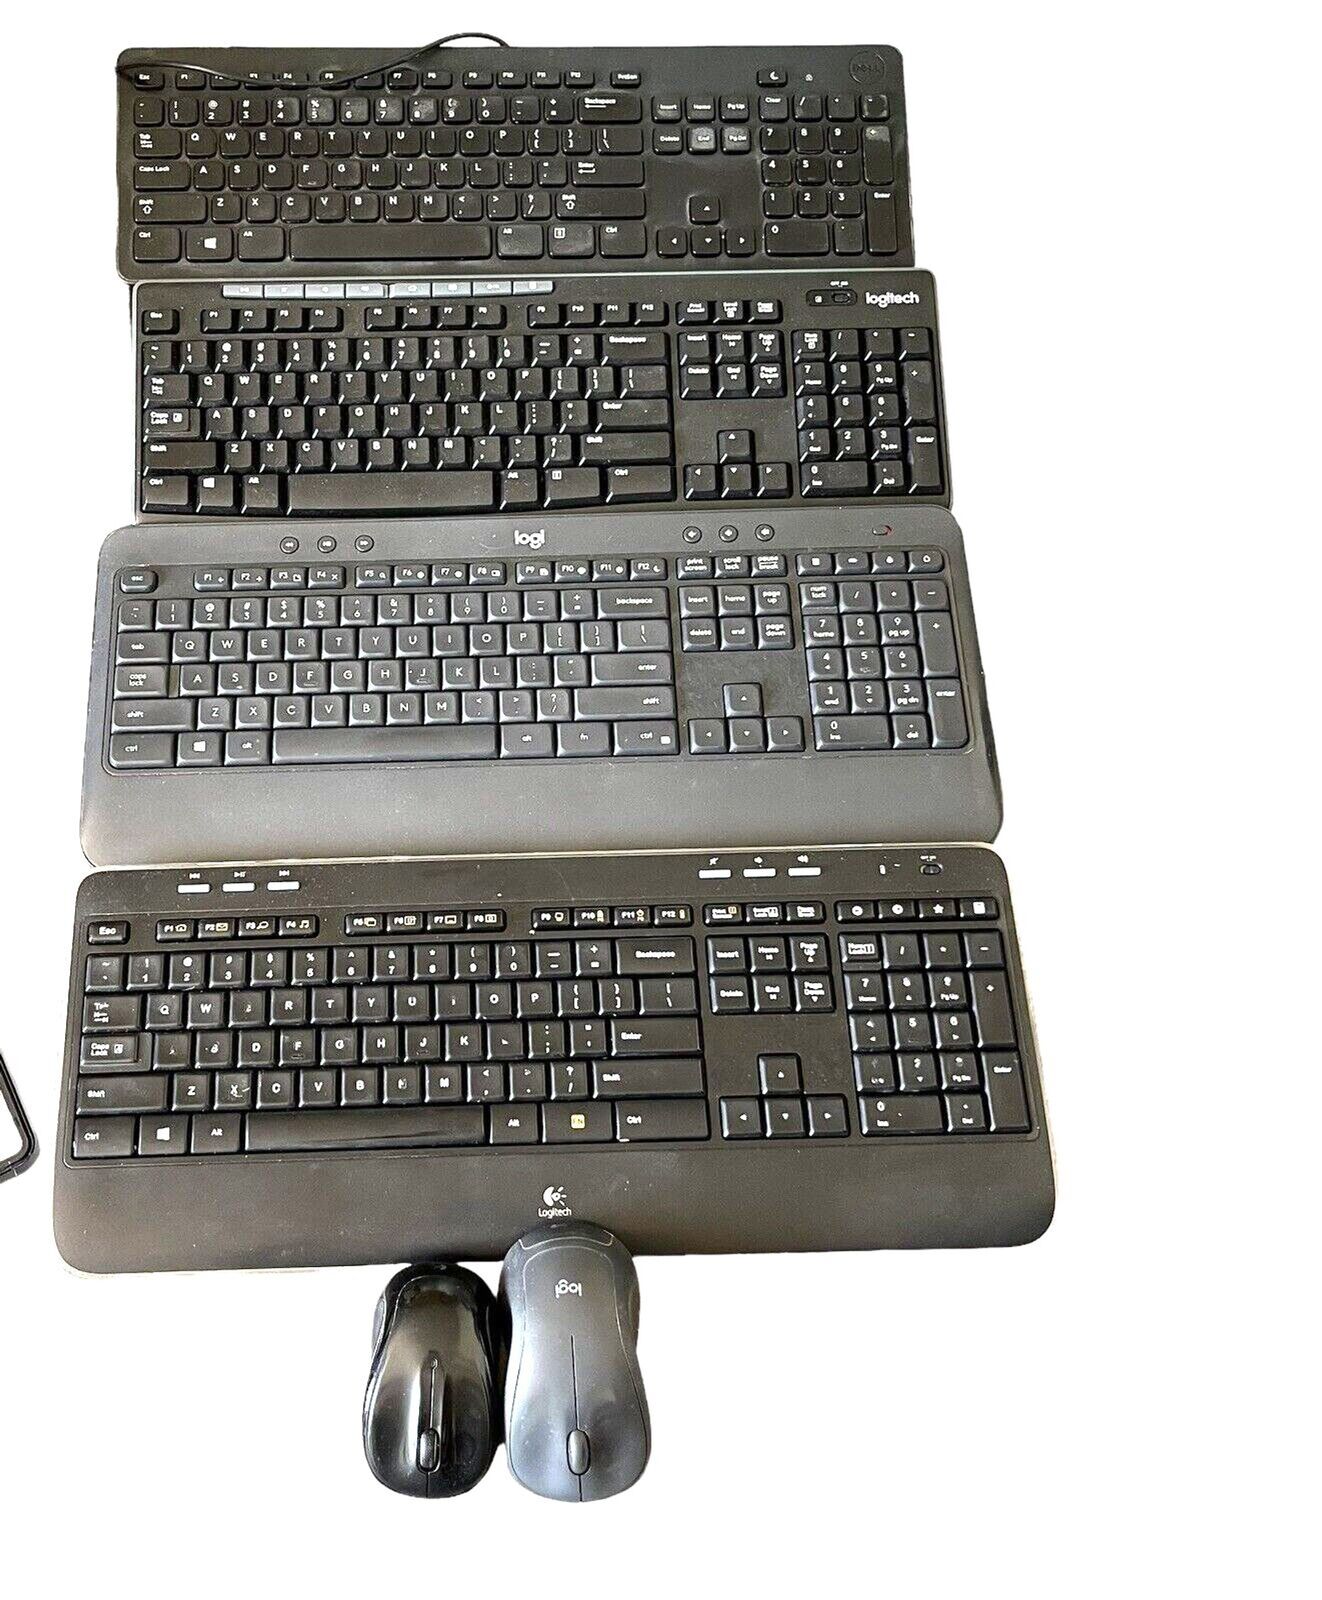 Lot of 4 Keyboards 2 Mouses For Repair Or Parts K520, K540 Logi Logitech Broken